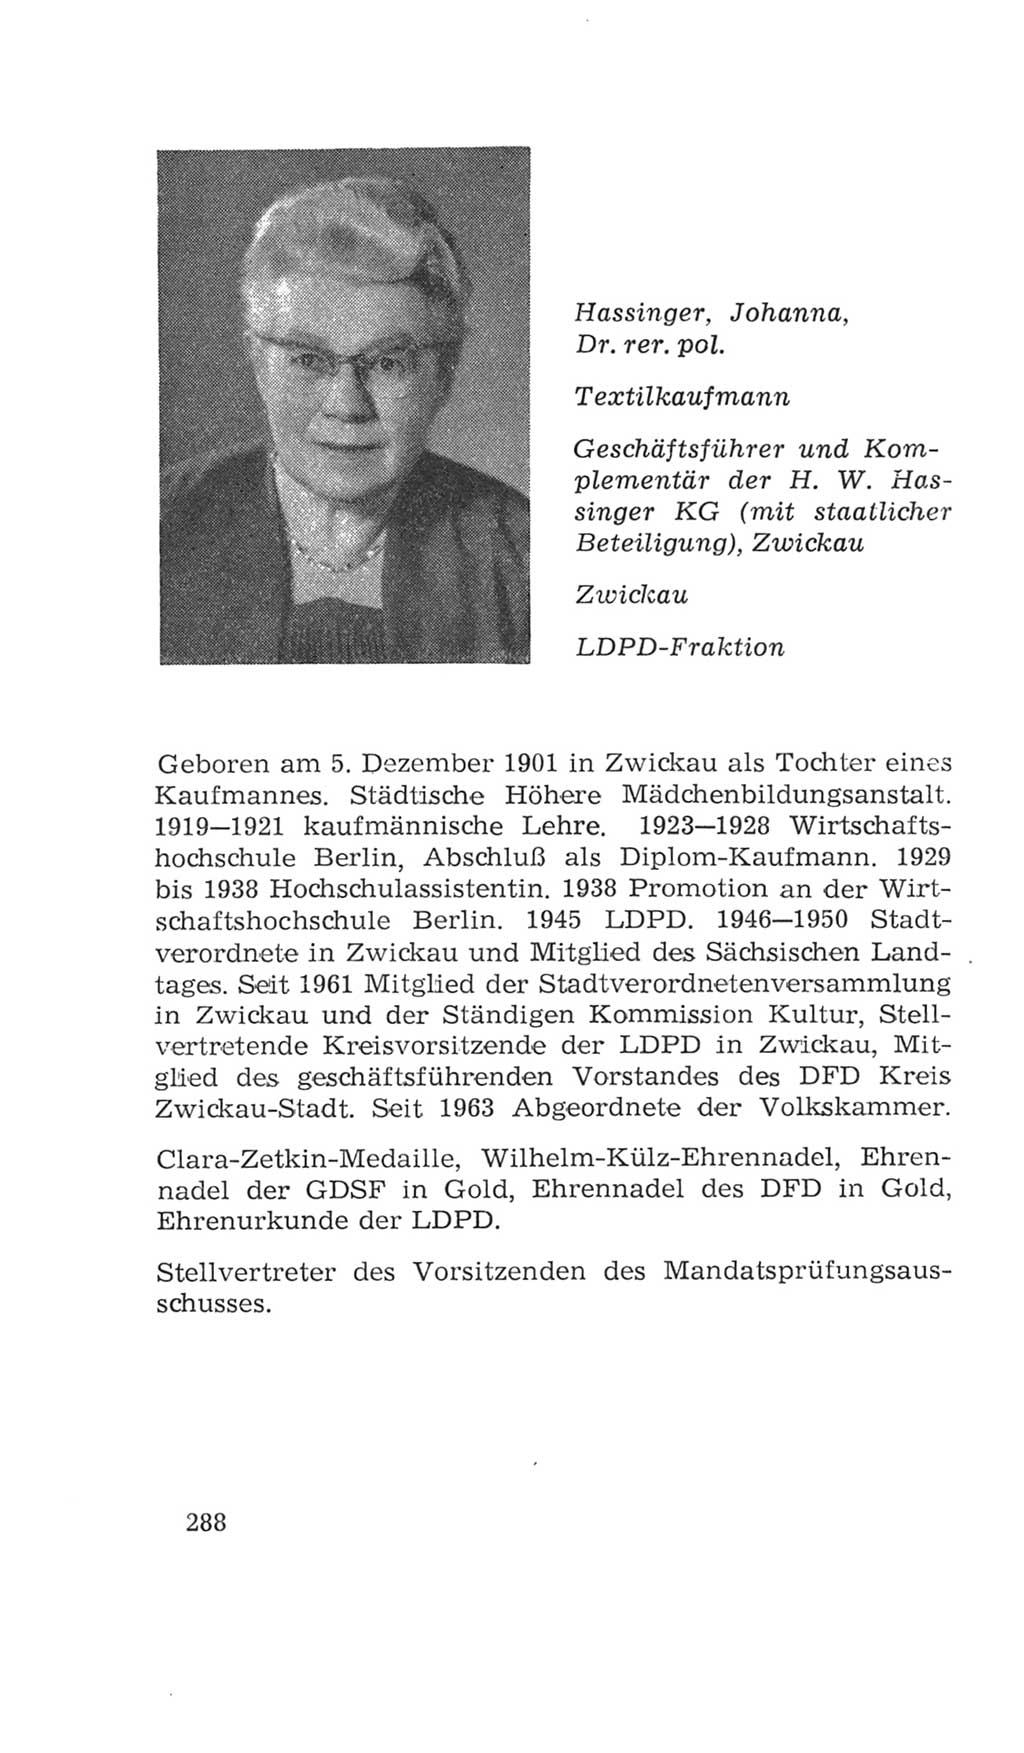 Volkskammer (VK) der Deutschen Demokratischen Republik (DDR), 4. Wahlperiode 1963-1967, Seite 288 (VK. DDR 4. WP. 1963-1967, S. 288)